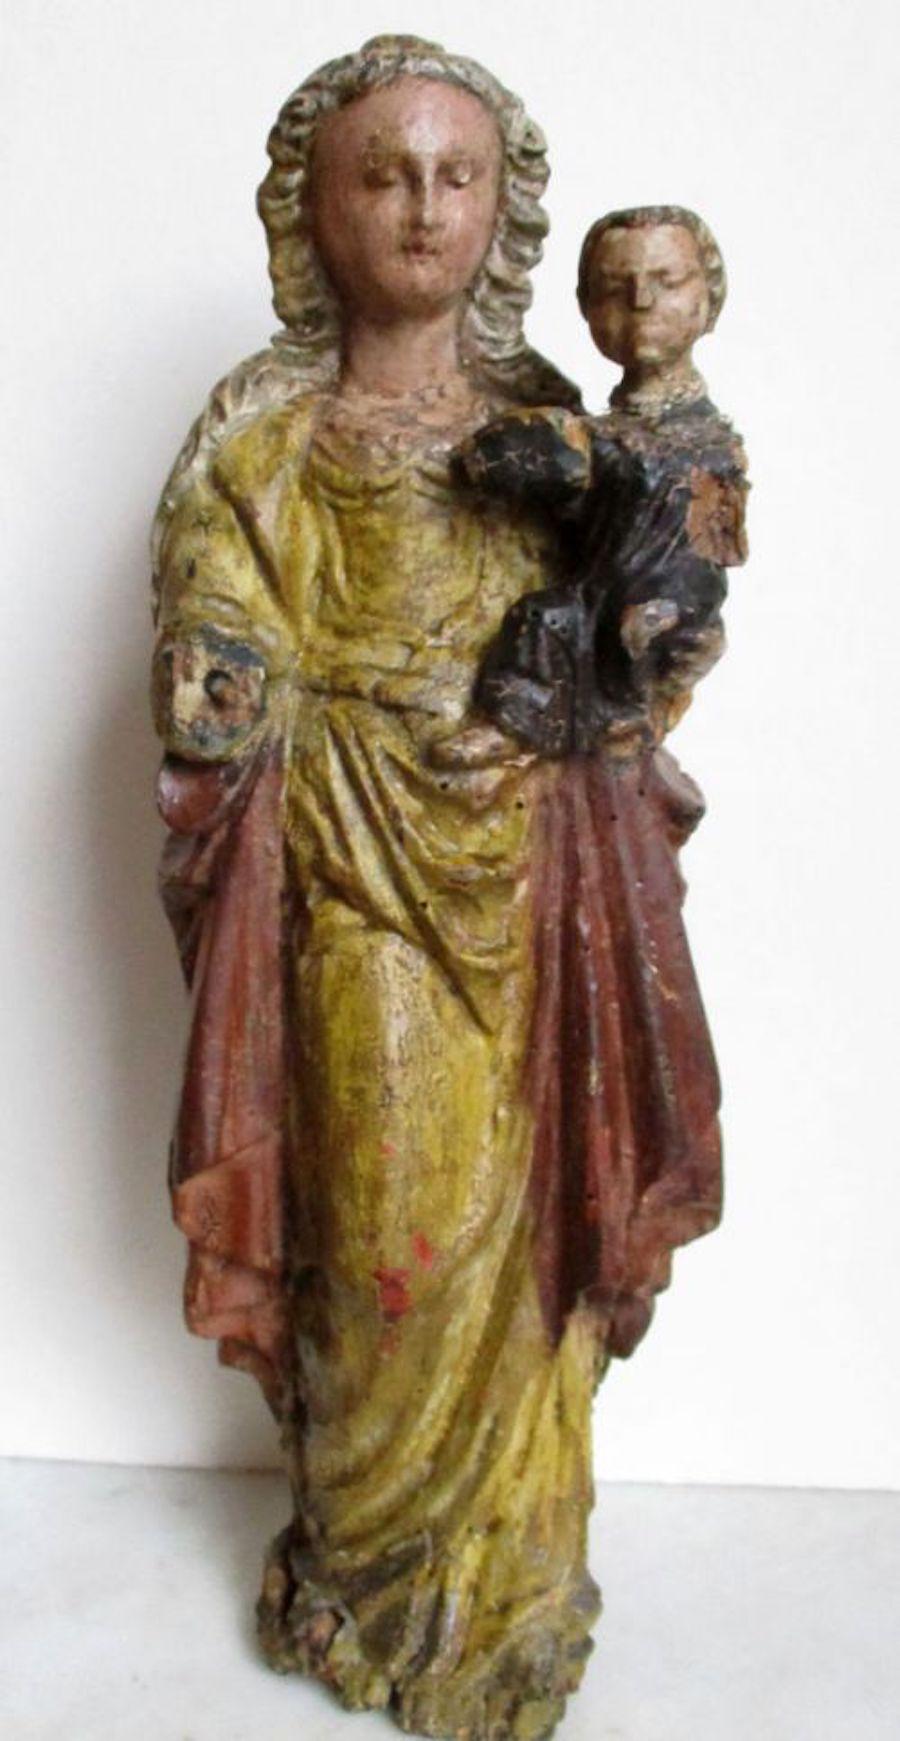 Unknown Figurative Sculpture - Malines Mechelen Madonna Virgin and Child